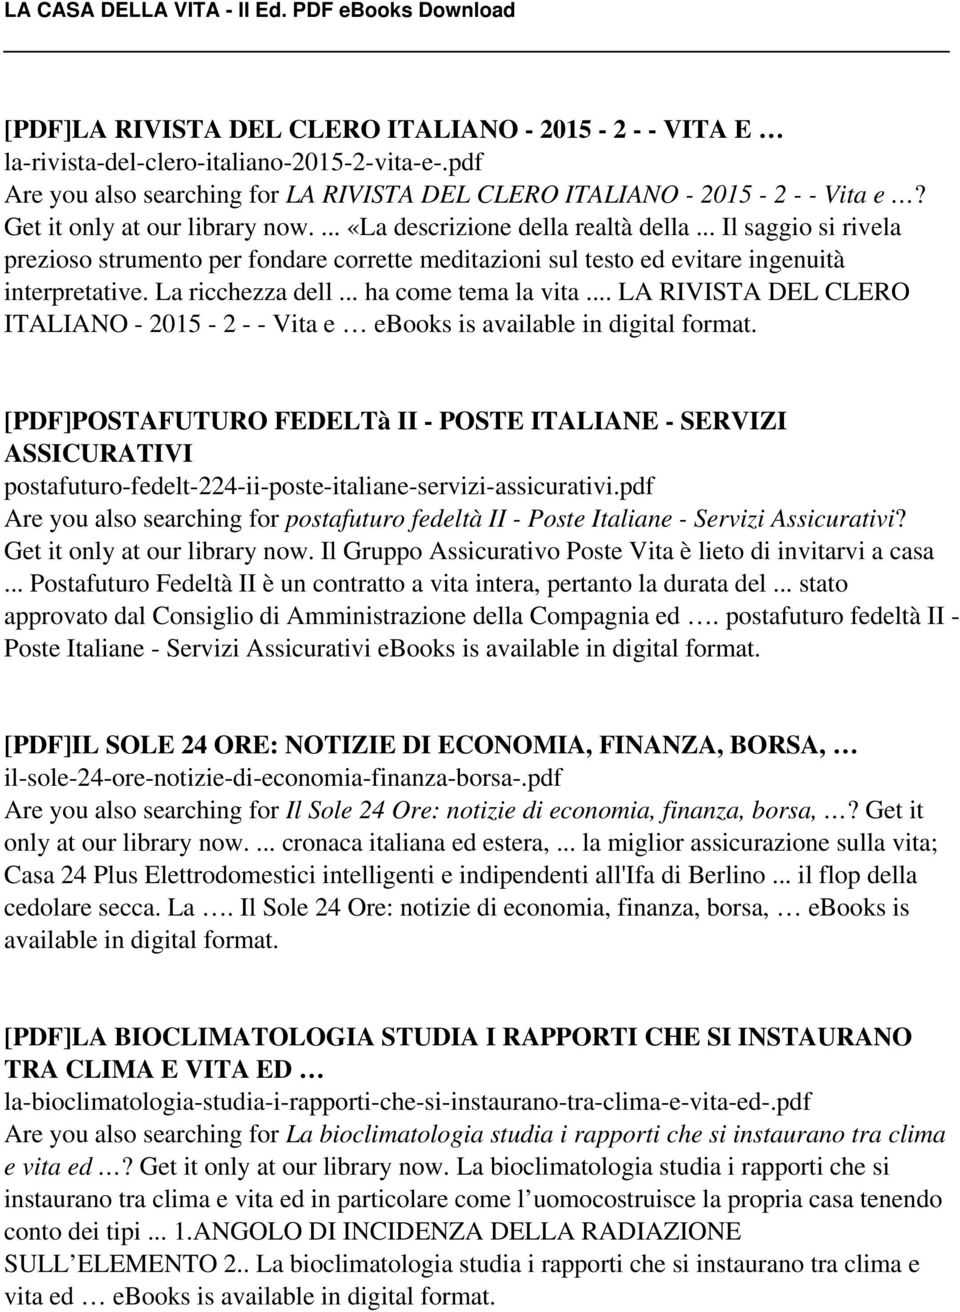 La ricchezza dell... ha come tema la vita... LA RIVISTA DEL CLERO ITALIANO - 2015-2 - - Vita e ebooks is available in digital format.